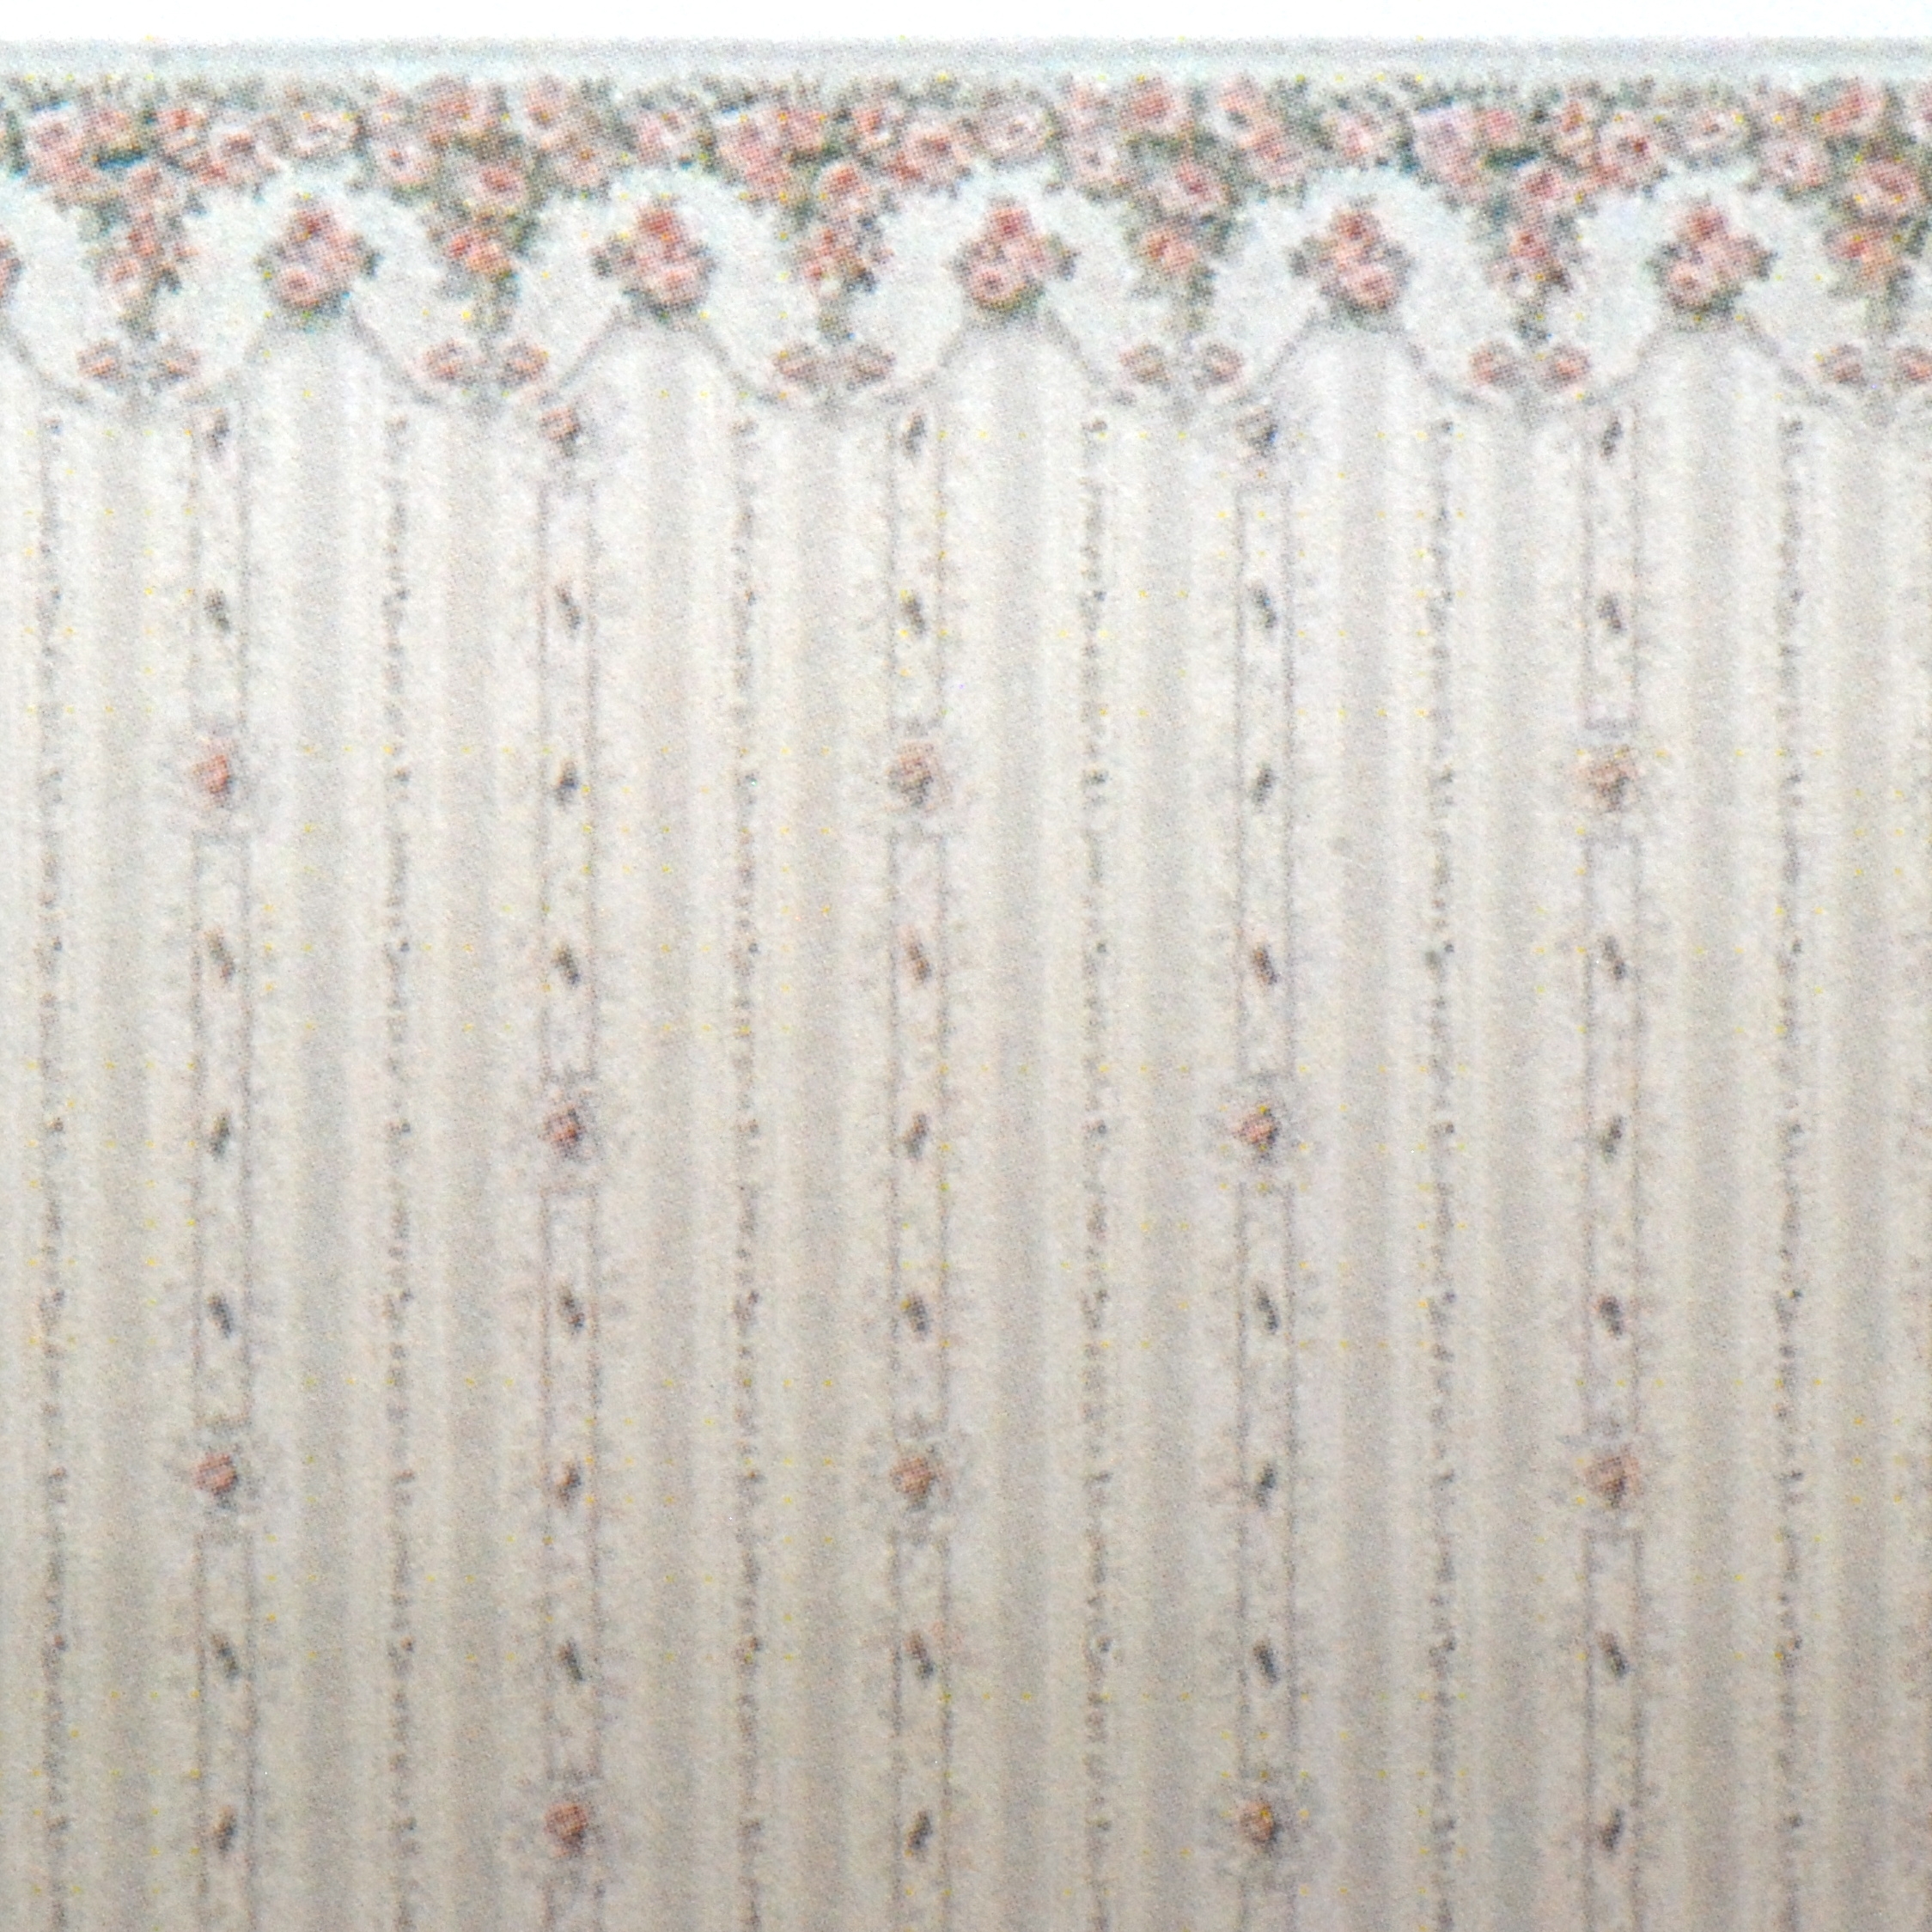 Details about   1:48 Scale Dollhouse Wallpaper Floral Breeze Combo 1920 Vintage 